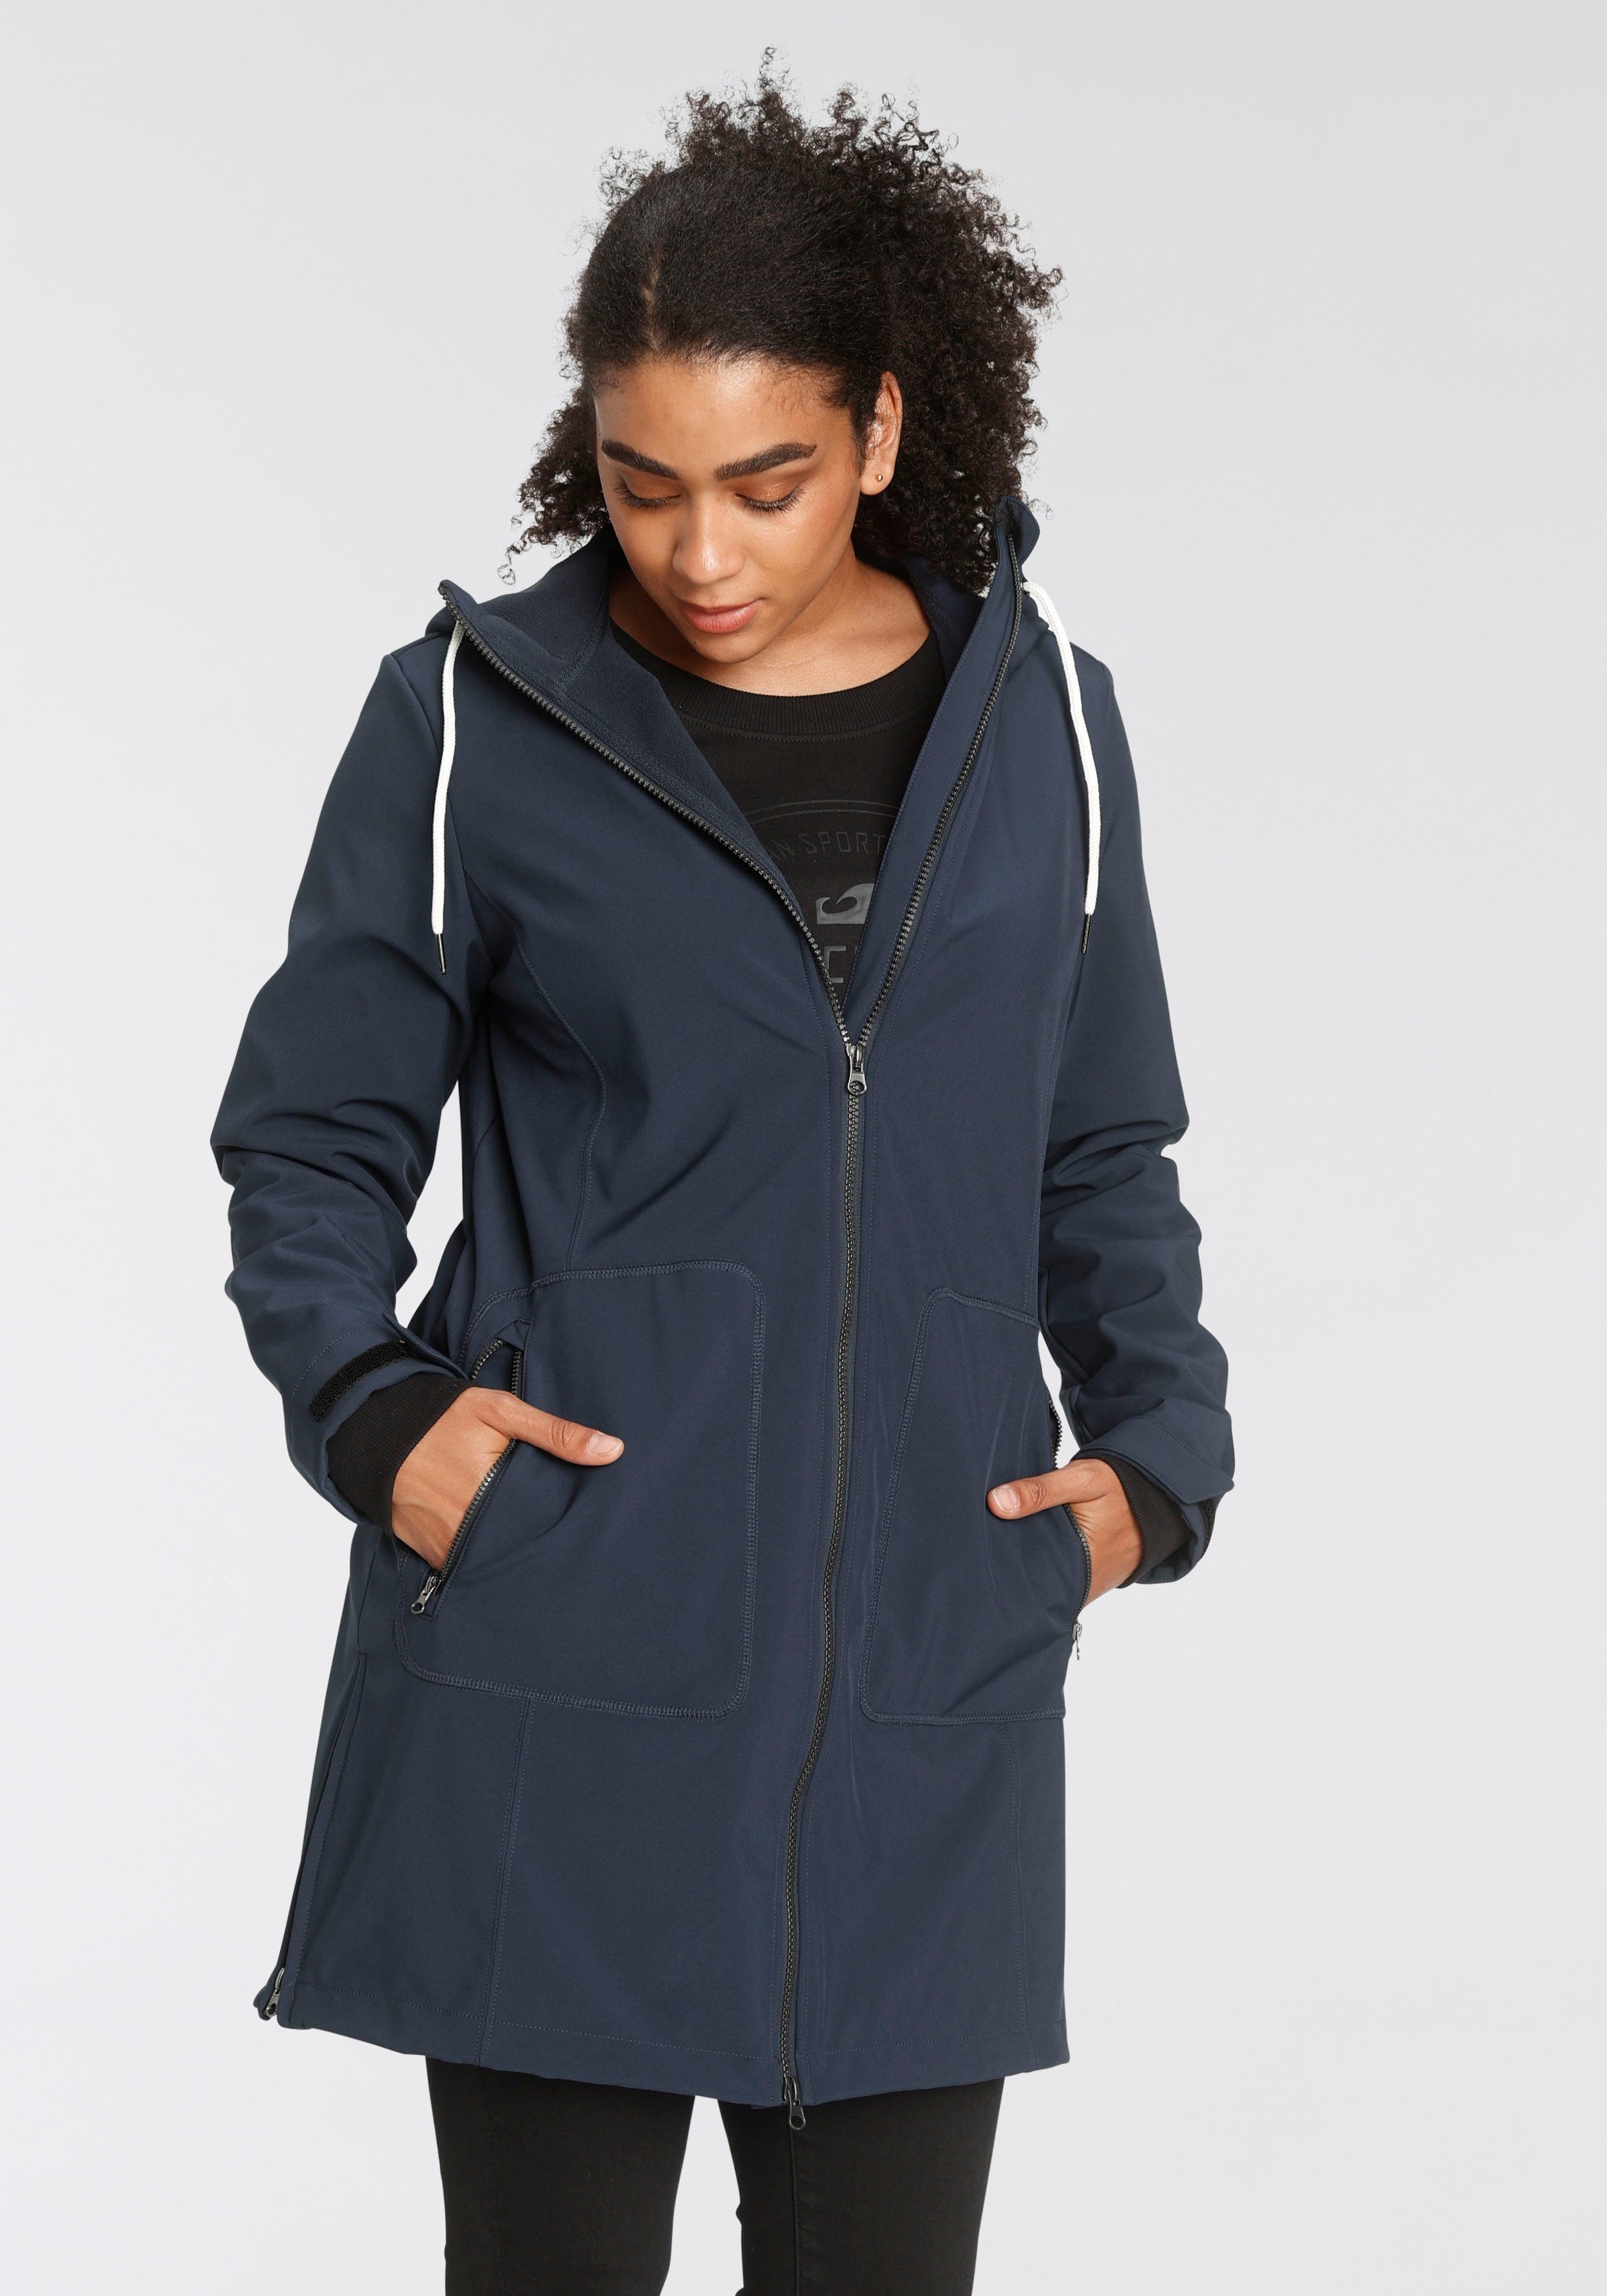 Polarino Jacken für Damen online kaufen | OTTO